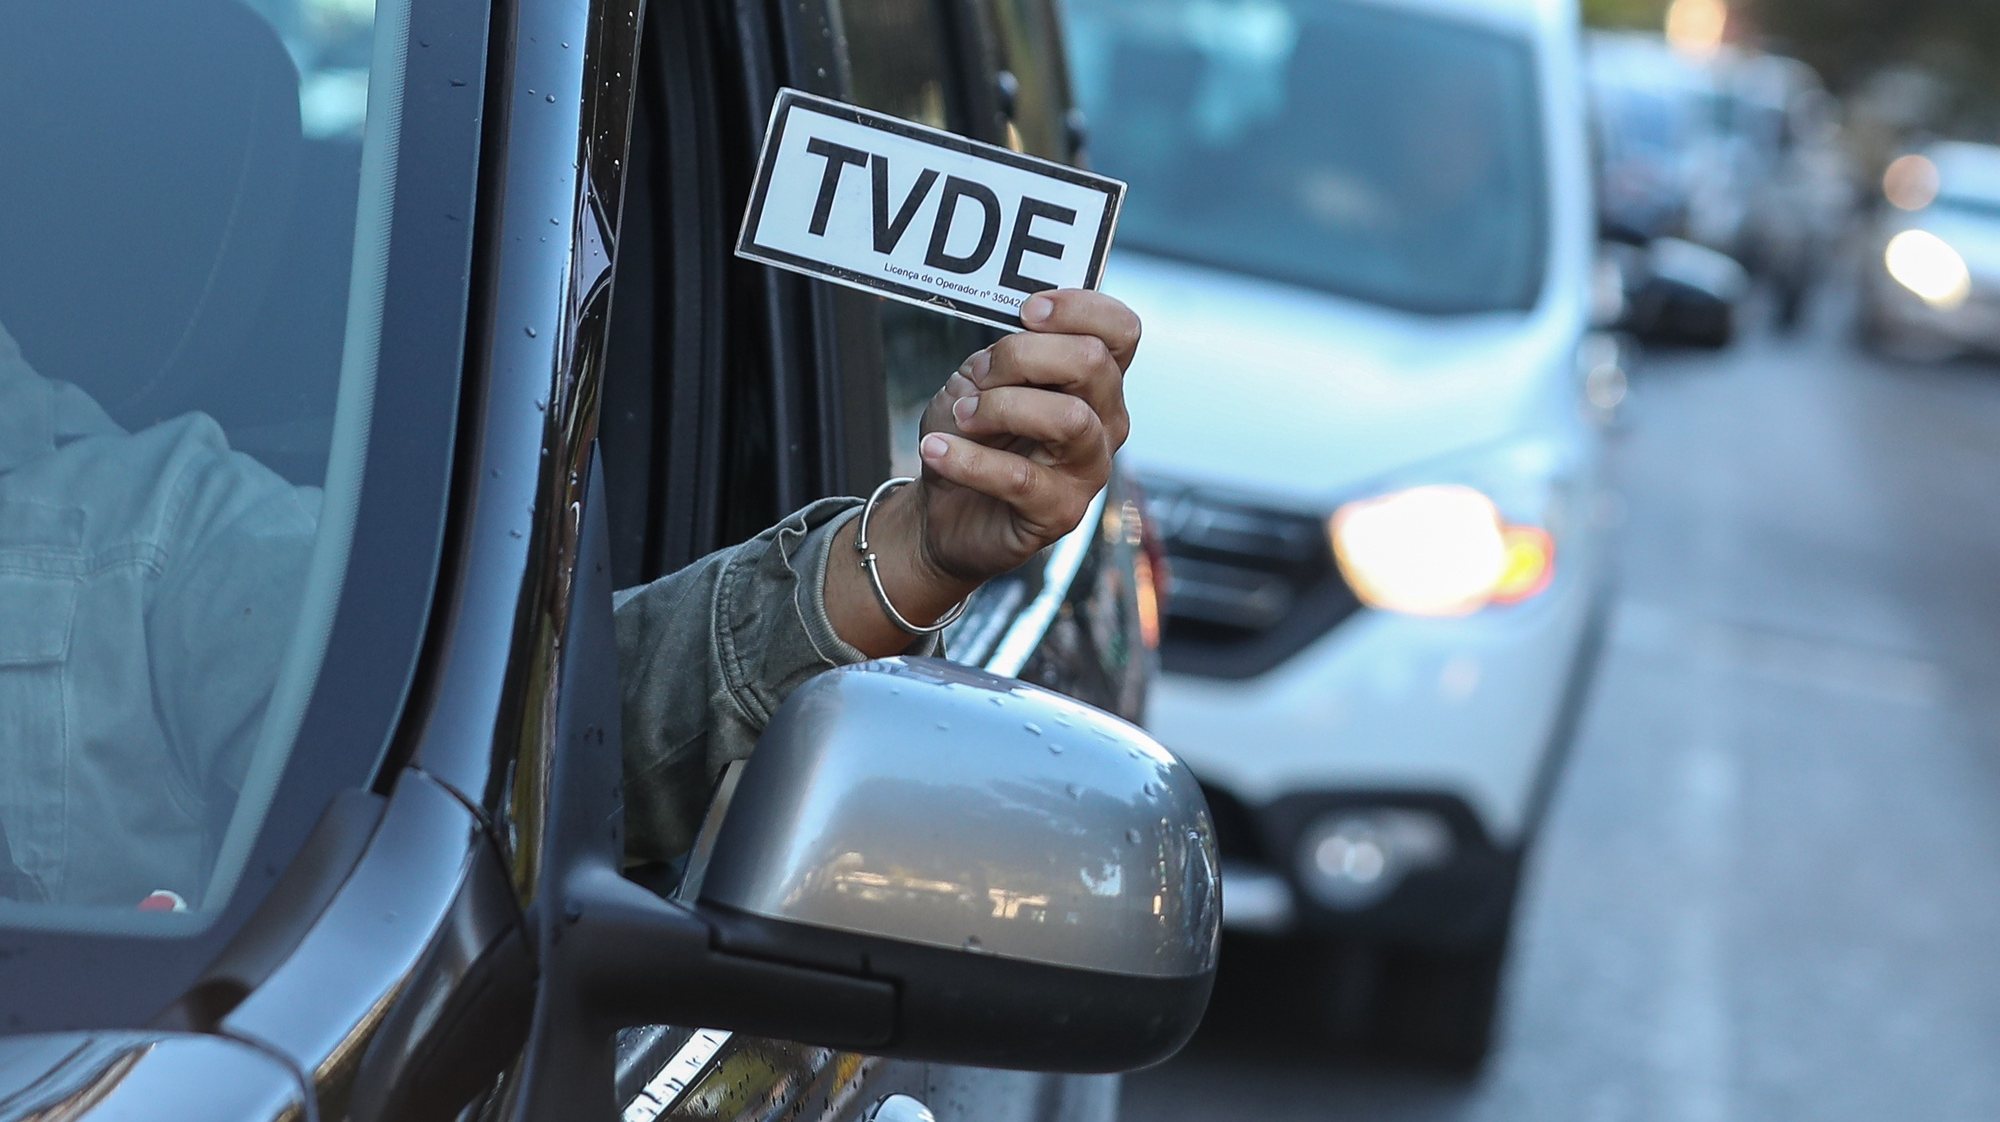 Protesto de motoristas e operadores de TVDE, em Lisboa, 03 de novembro de 2021. Esta ação tem como objetivo protestar contra a política de preços unilateral das plataformas Uber, Bolt e Freenow. ANTÓNIO COTRIM/LUSA